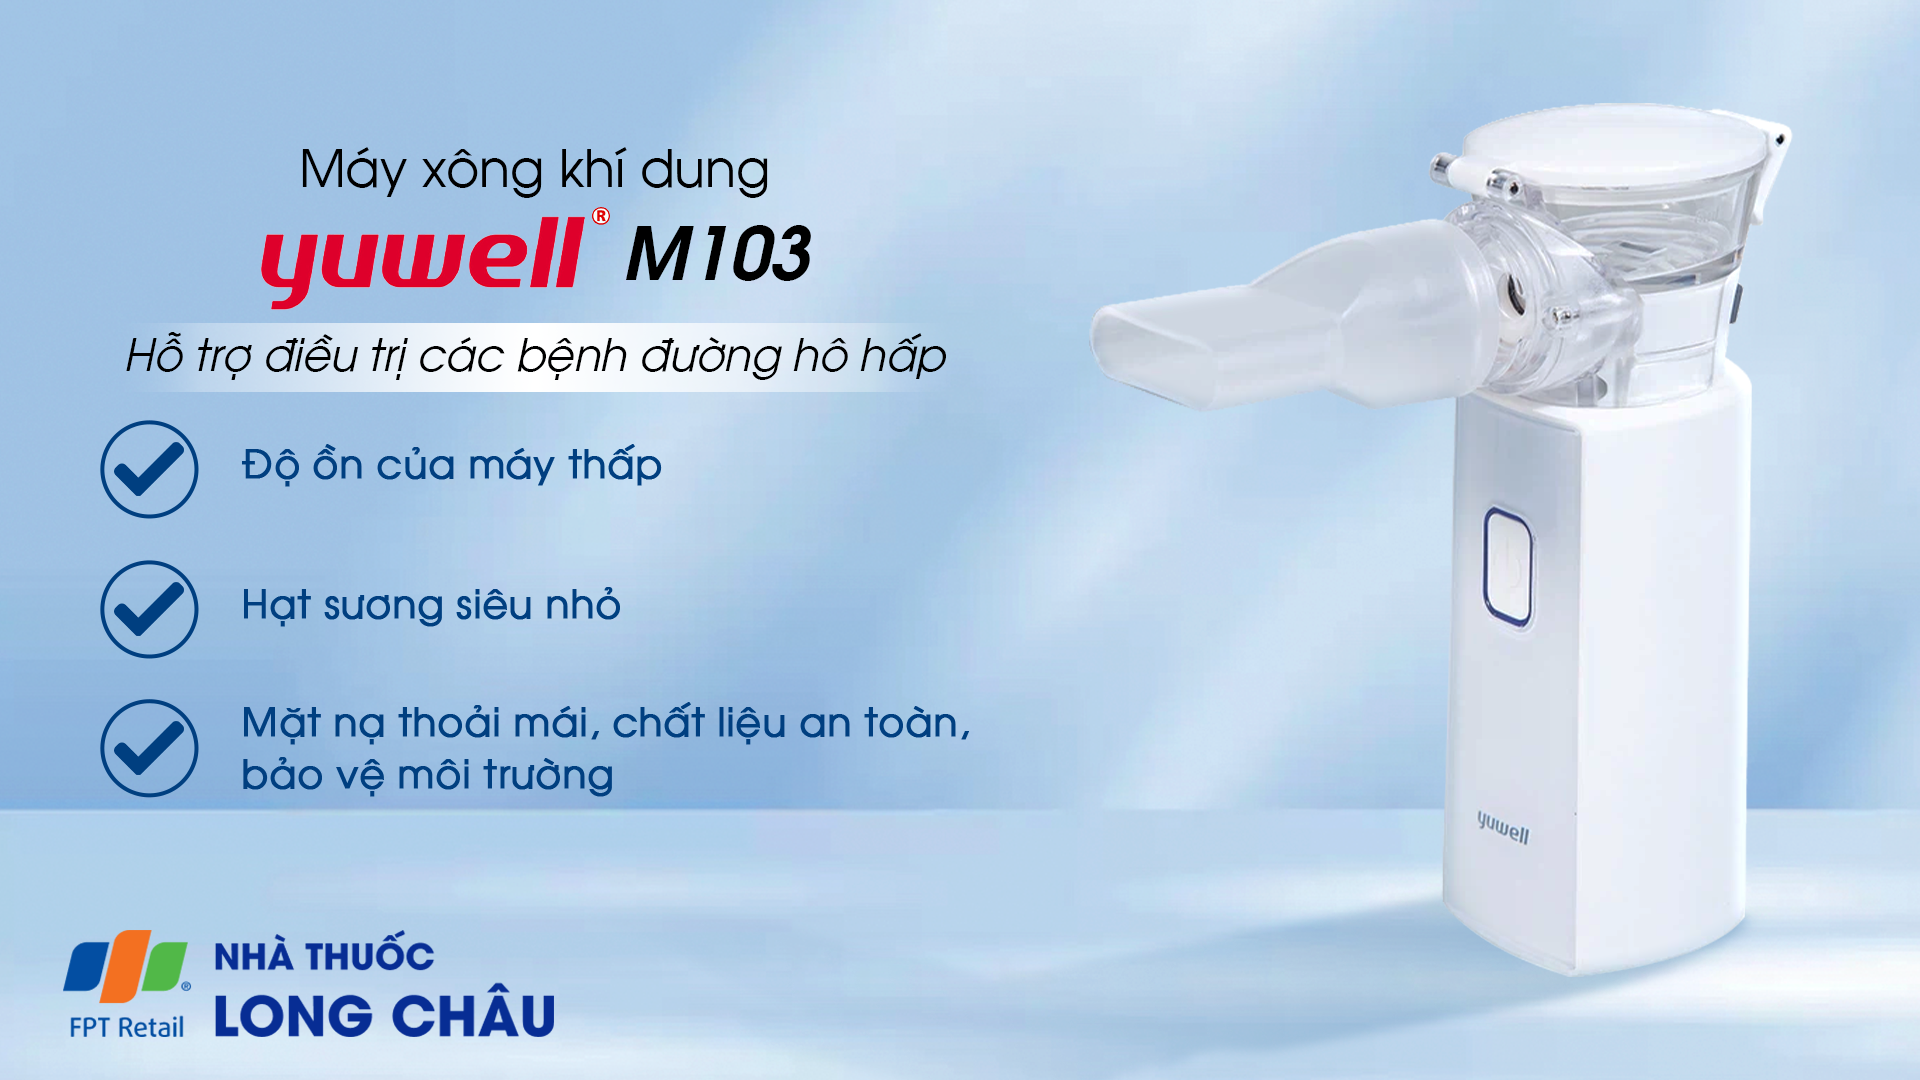 Máy xông khí dung Yuwell M103 cầm tay hỗ trợ điều trị các bệnh đường hô hấp 1.png